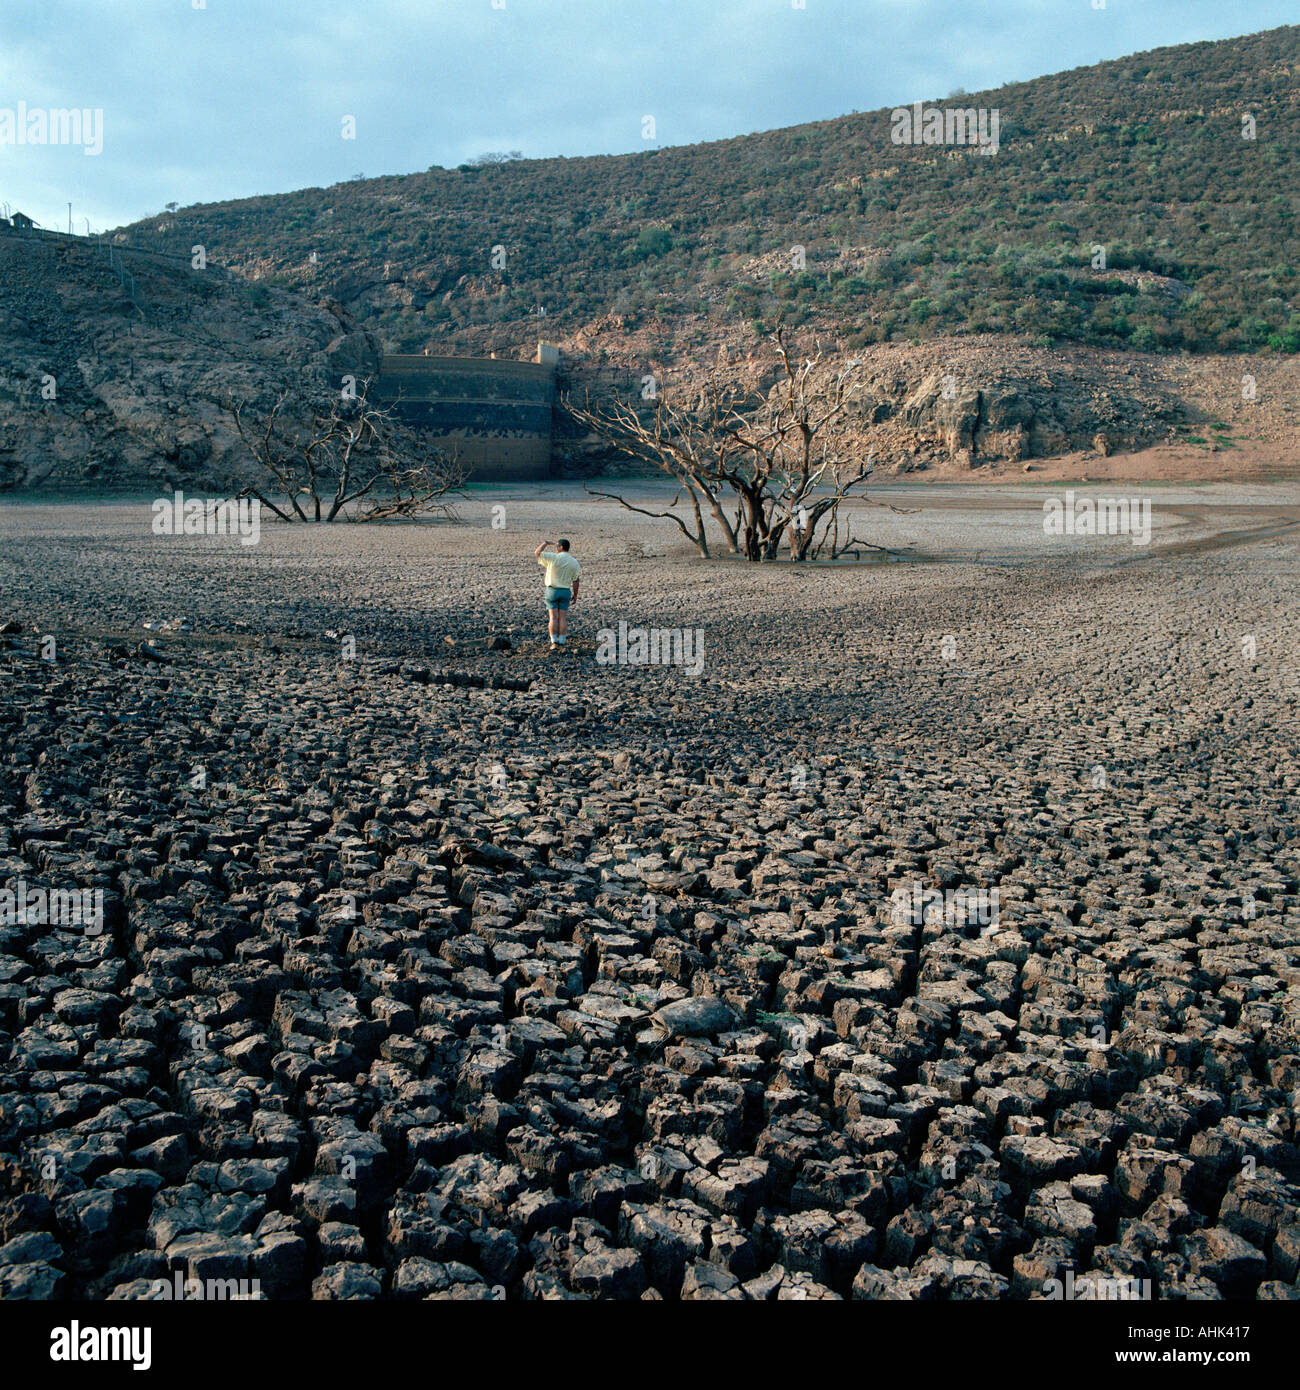 Lit de la séché Njelele Barrage dans Venda, Afrique du Sud, durant une période de sécheresse périodique. Banque D'Images